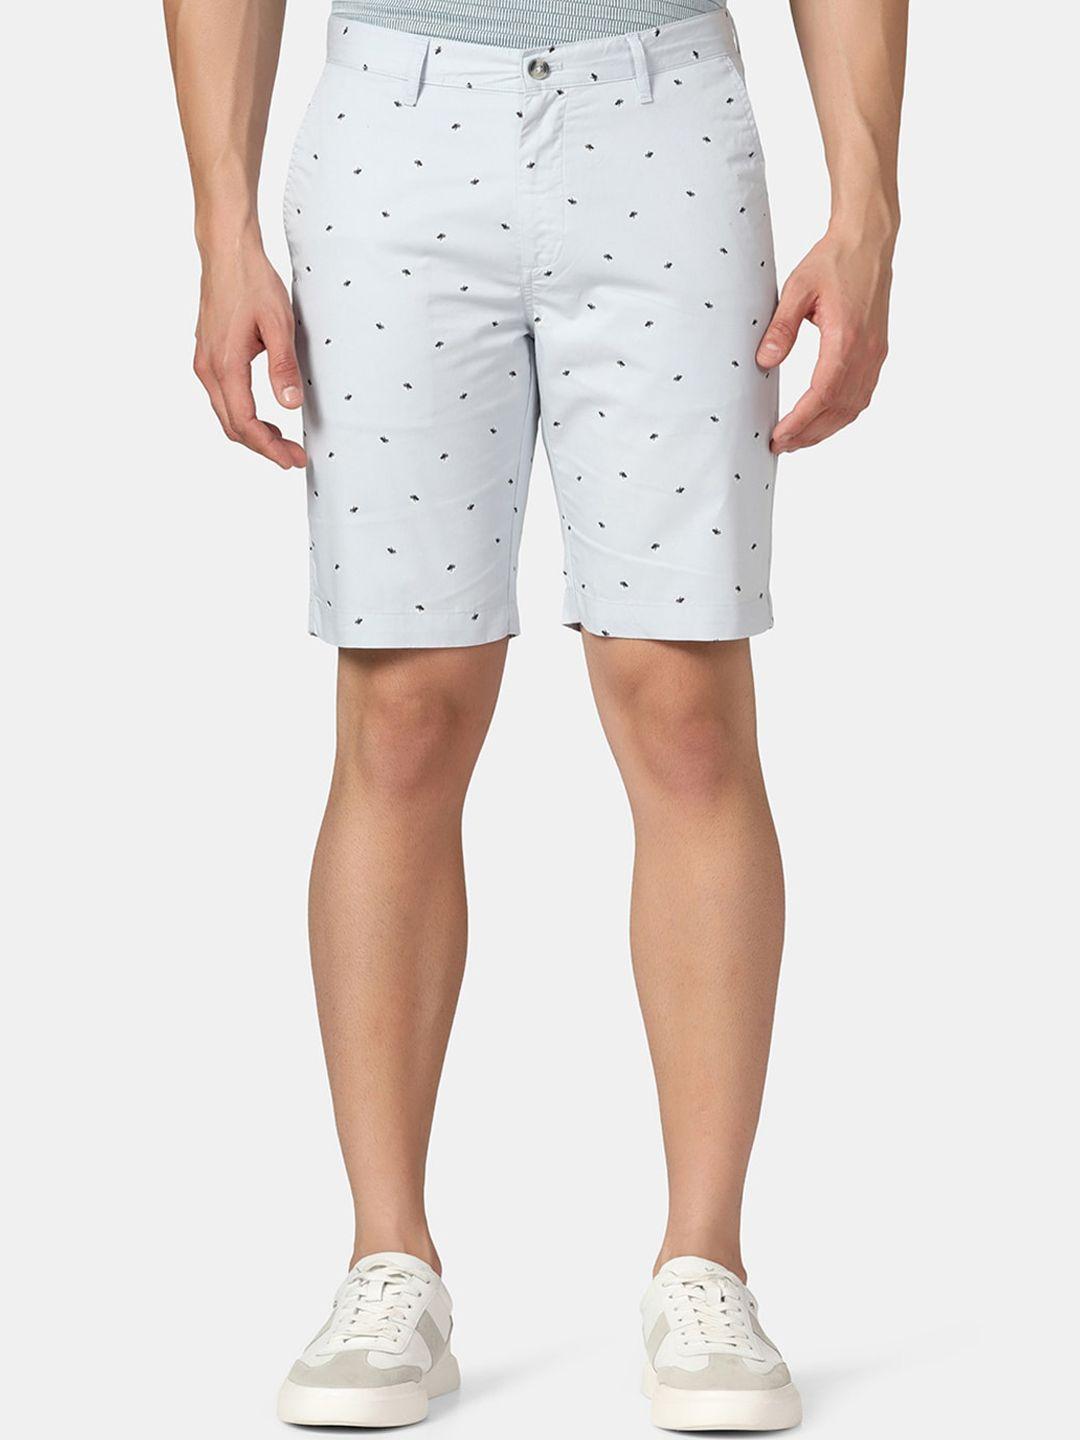 blackberrys-men-conversational-printed-slim-fit-pure-cotton-shorts